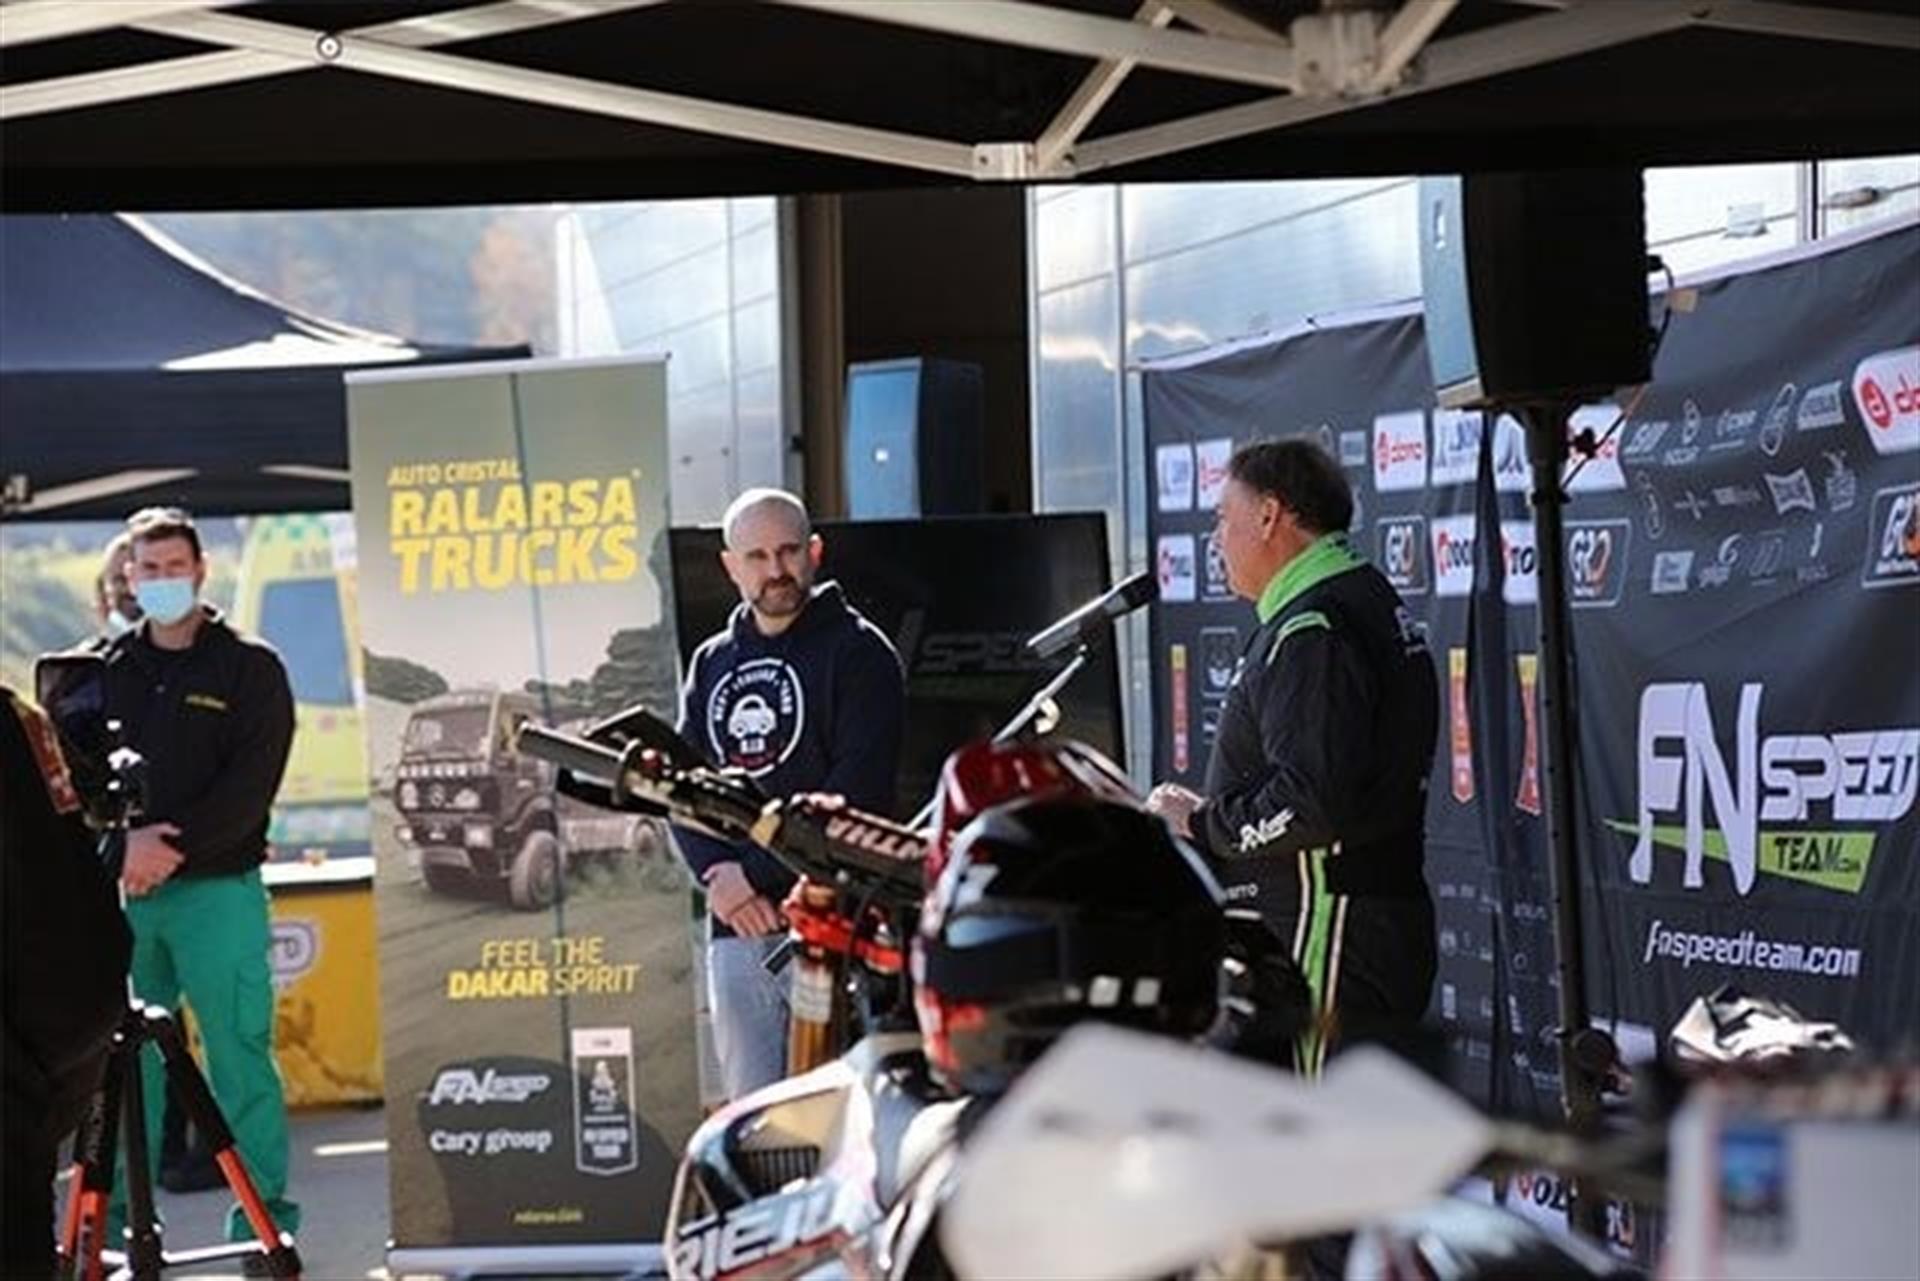 Ralarsa Trucks, nuevo espónsor de FN Speed Team en el Rally Dakar 2022.